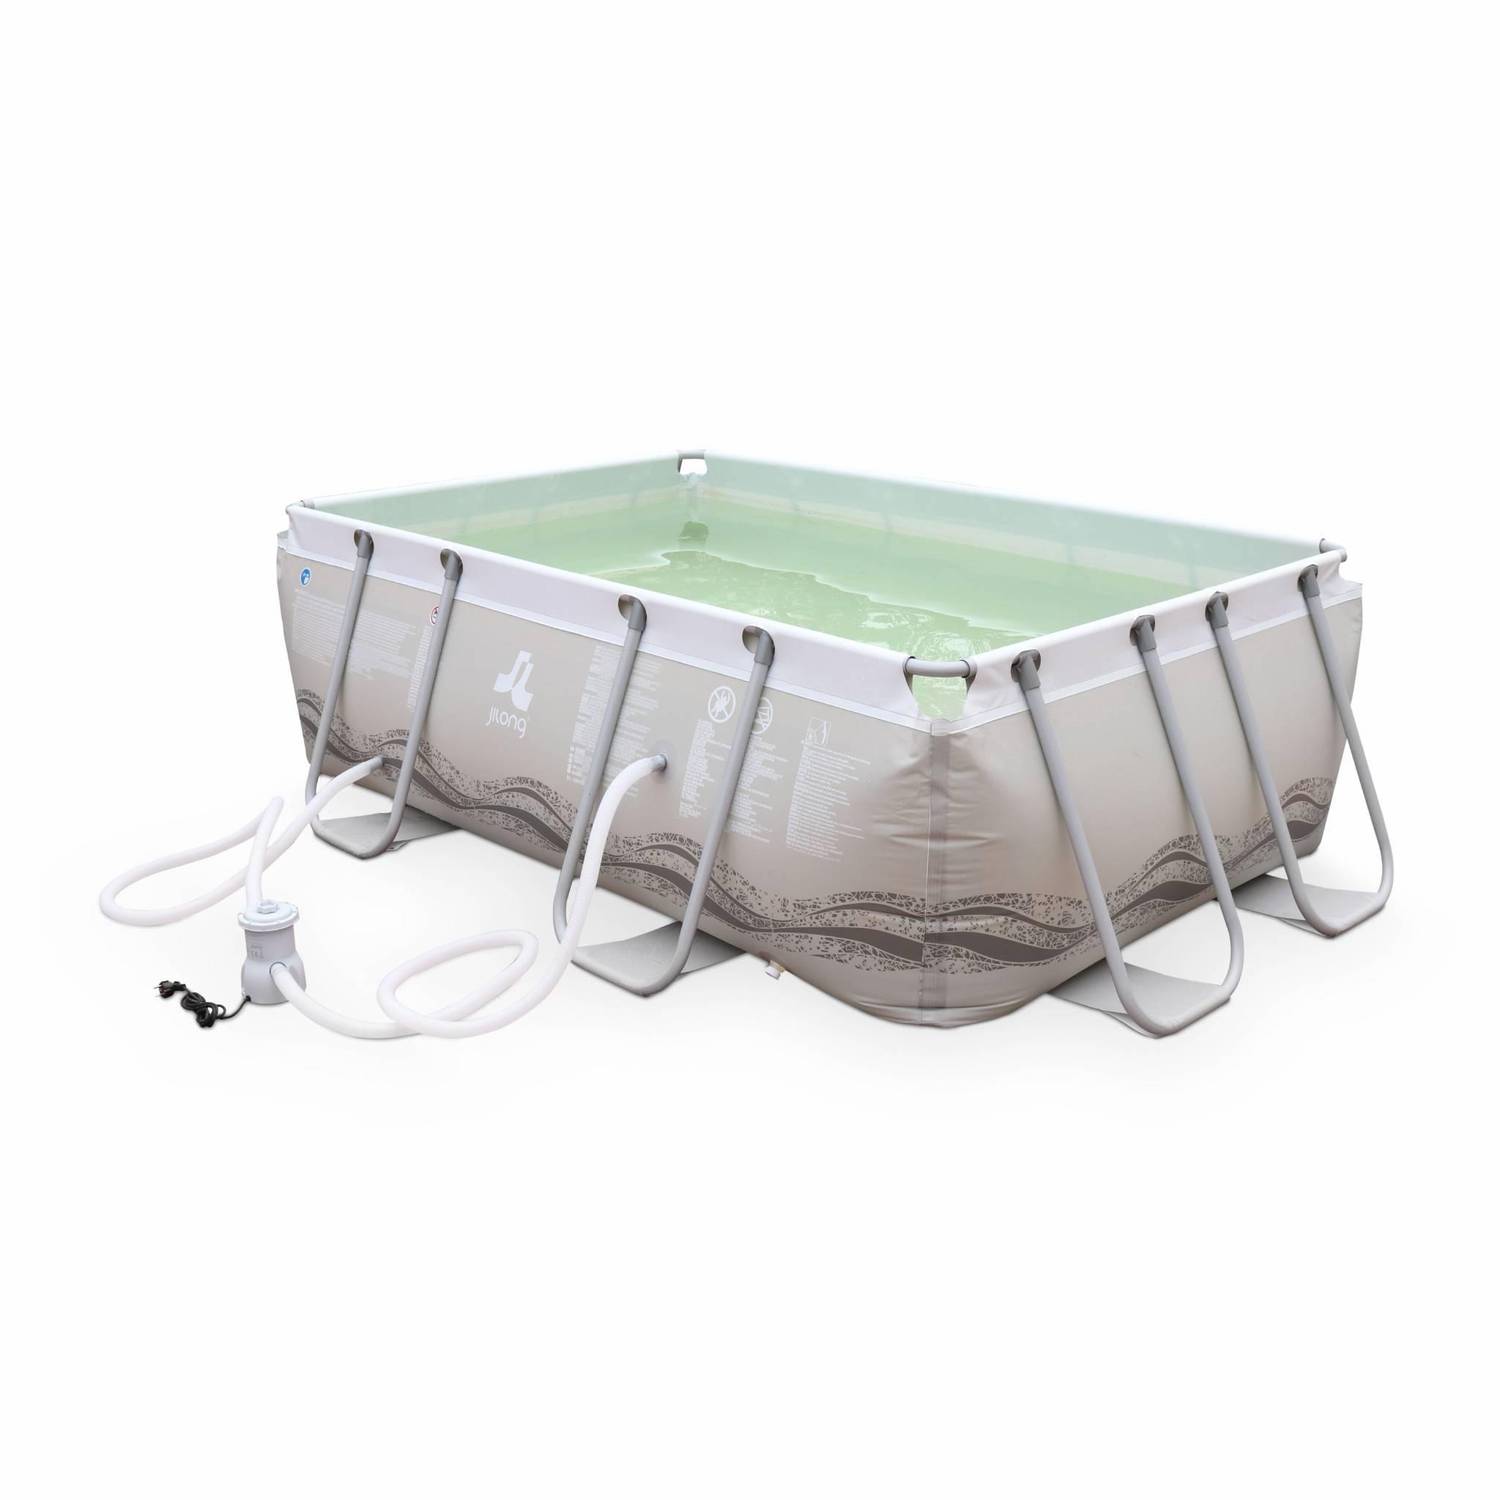 Piscine Tubulaire Corail grise, piscine rectangulaire 3x2m avec pompe de filtration, piscine hors sol armature acier Photo1